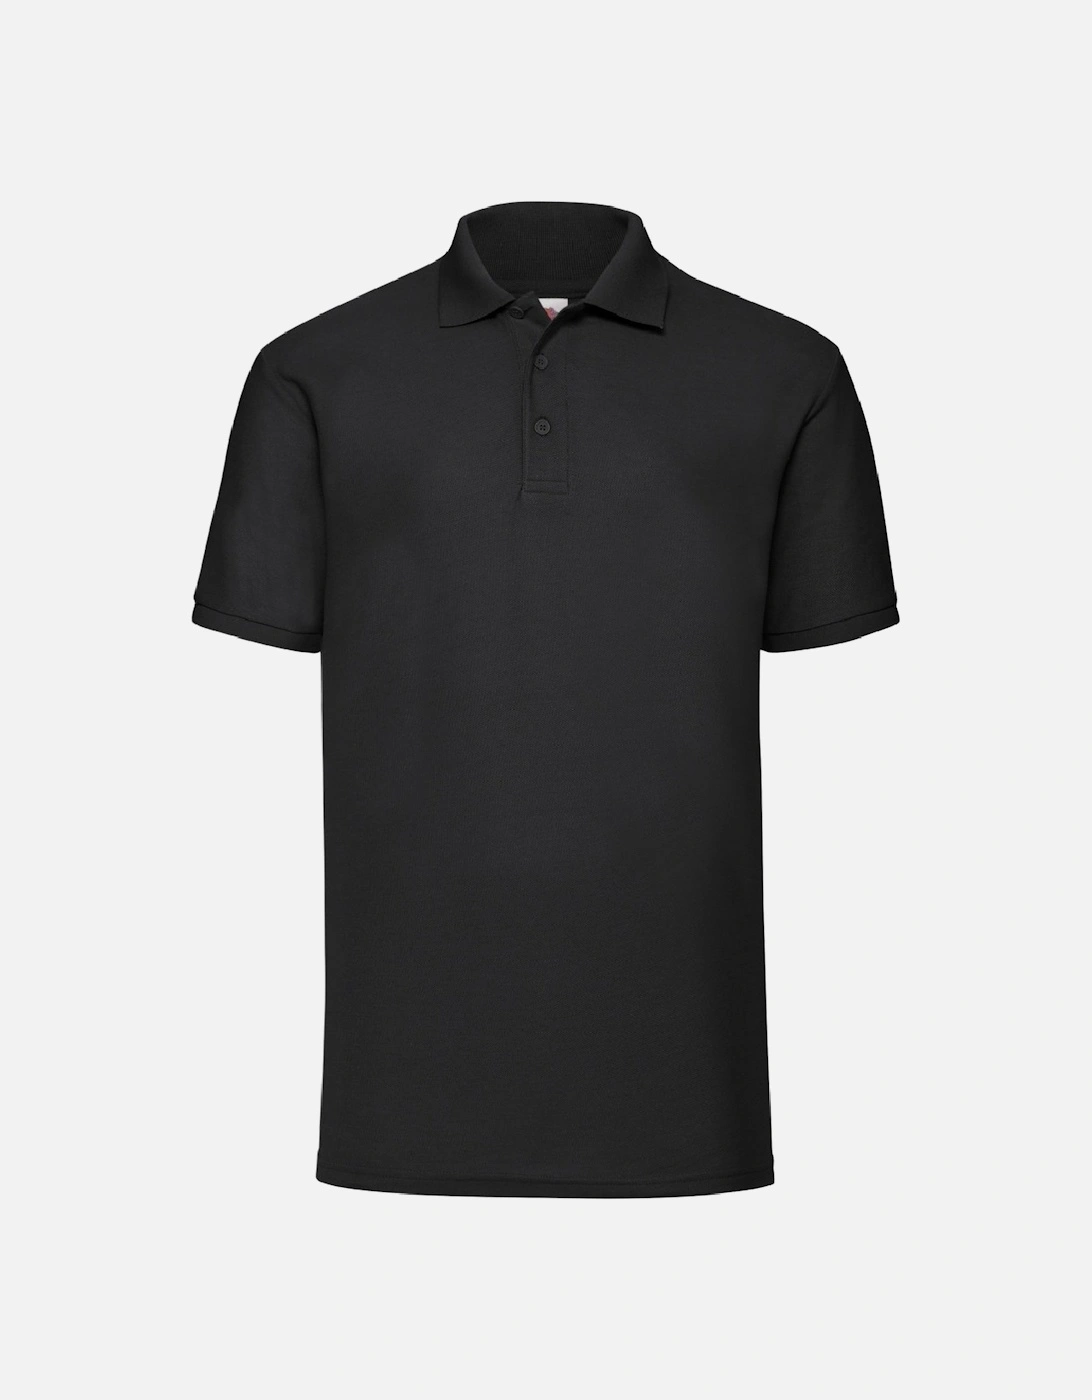 Mens 65/35 Pique Short Sleeve Polo Shirt, 3 of 2